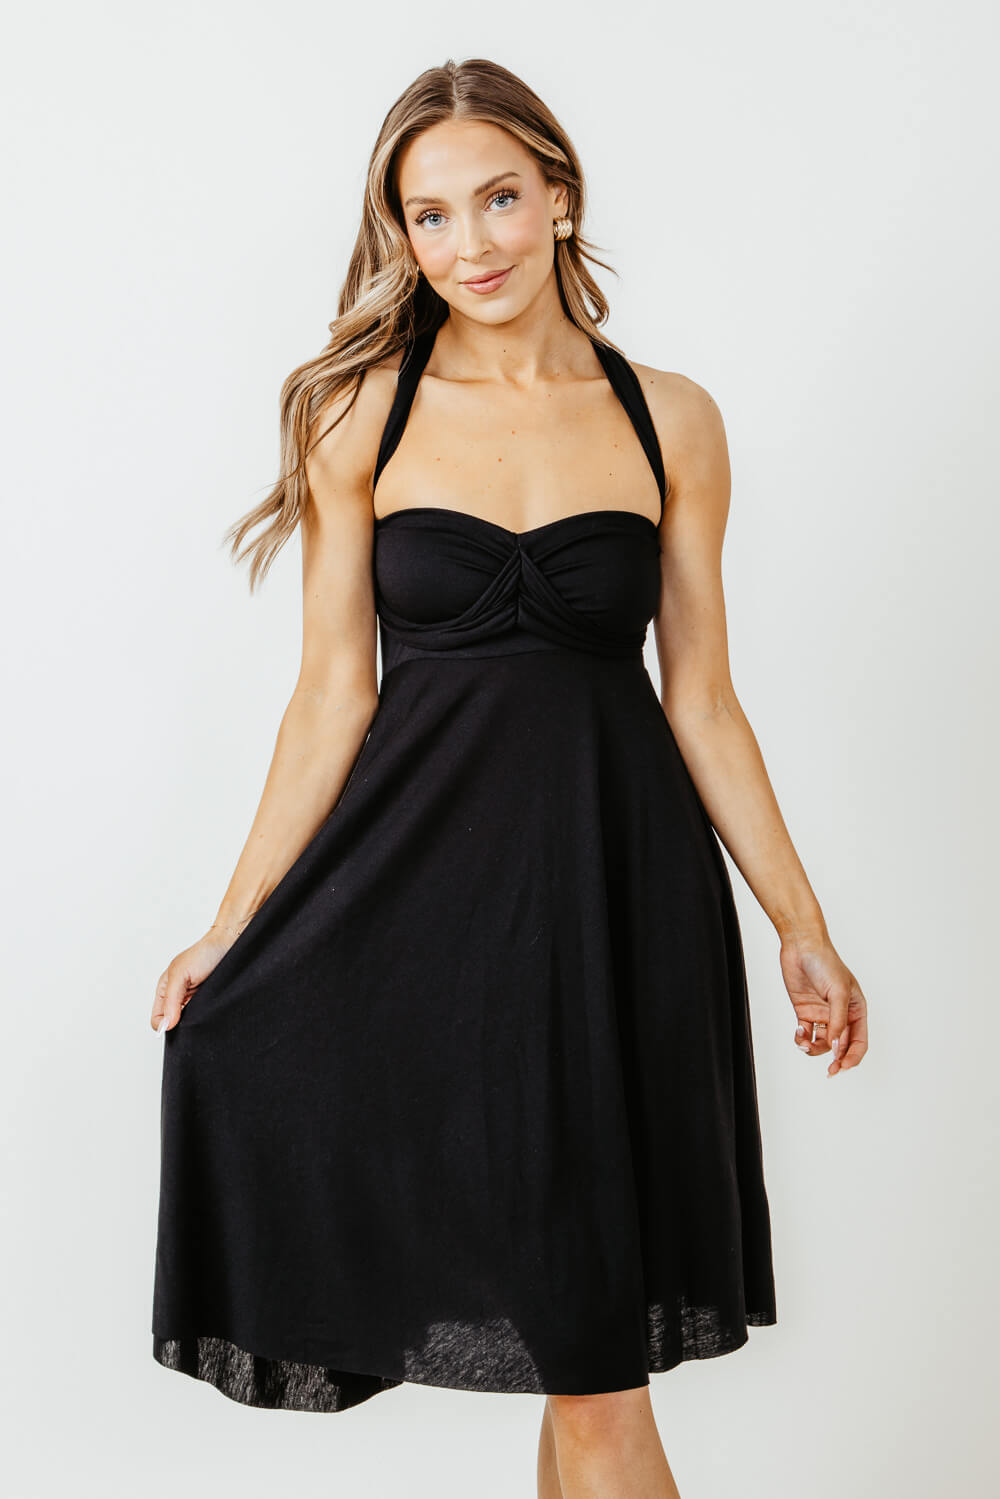 Elan Strapless Waist Tie Dress for Women in Black